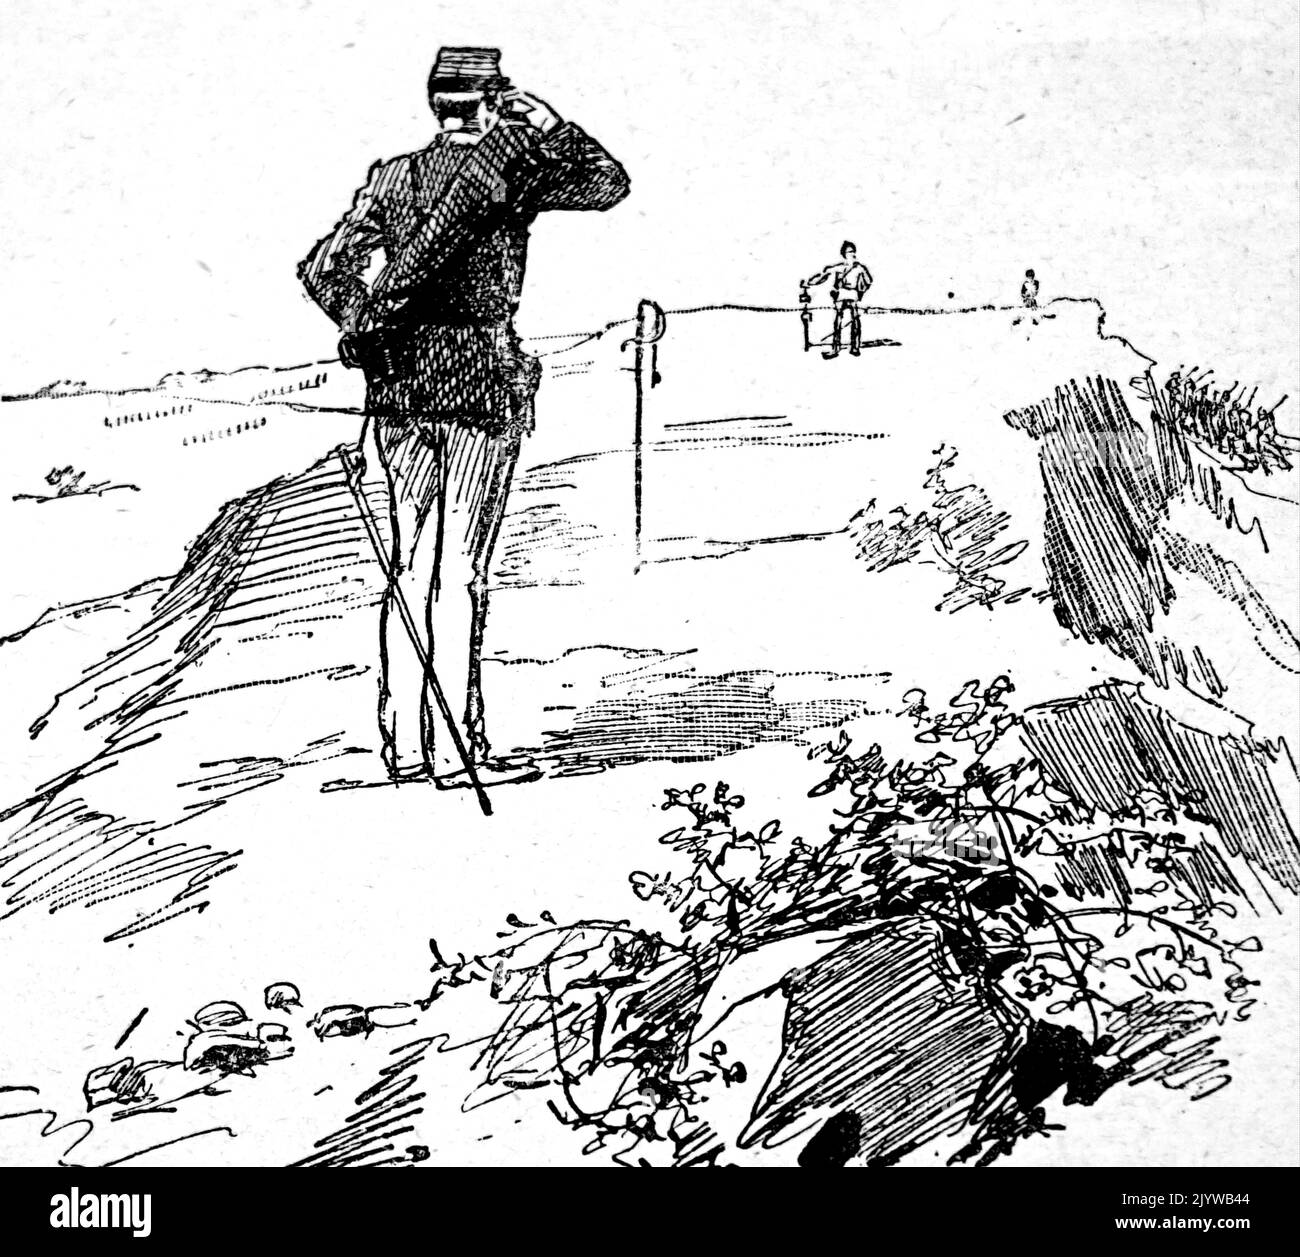 Die Abbildung zeigt einen Entfernungsmesser, ein Gerät, das die Entfernung vom Beobachter zu einem Ziel in einem Prozess misst, der als Rangieren bezeichnet wird. Datiert aus dem 19.. Jahrhundert Stockfoto